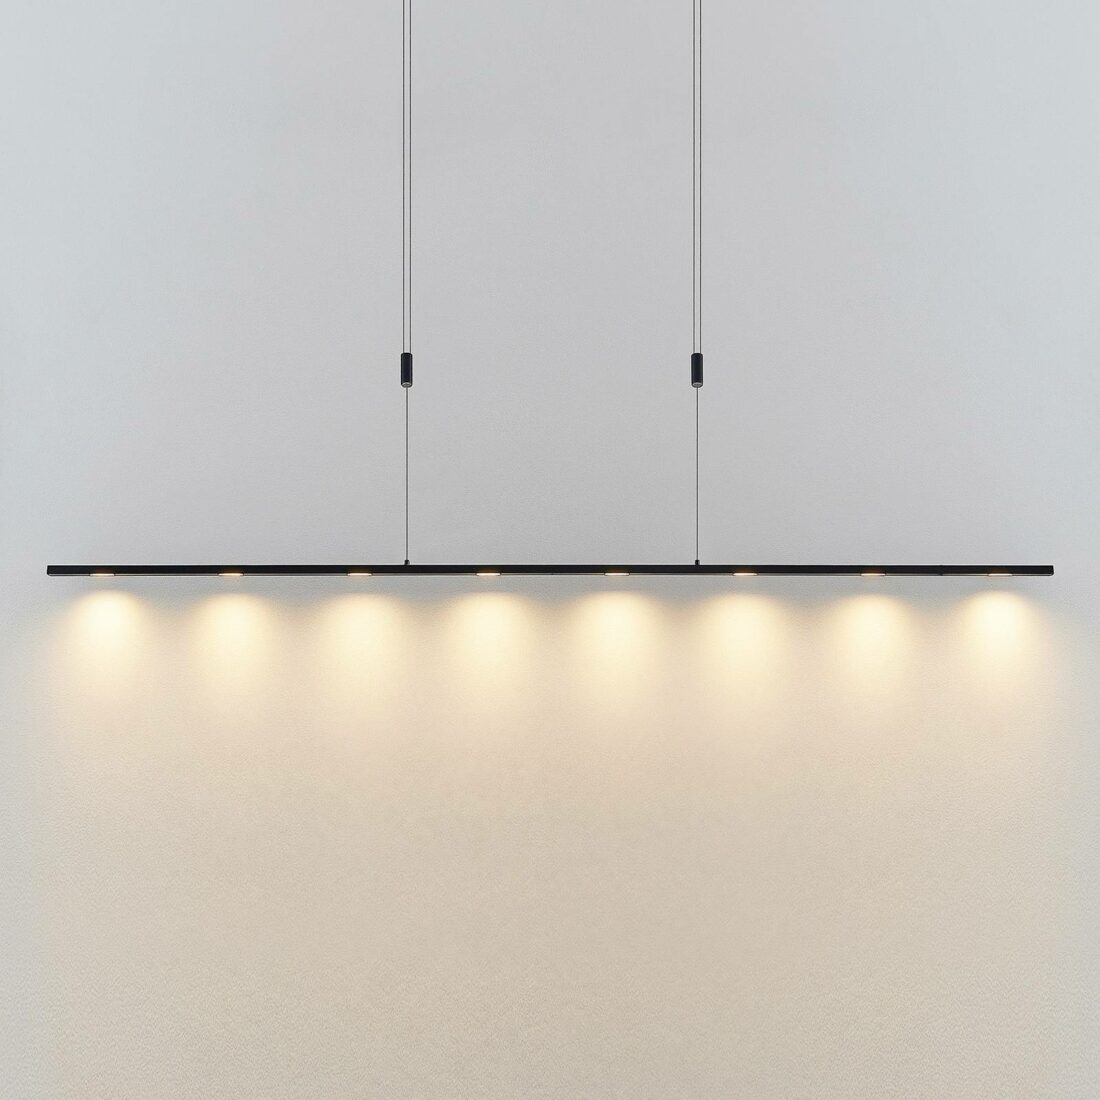 Lucande Stakato LED závěsné světlo 8 zdrojů 180 cm